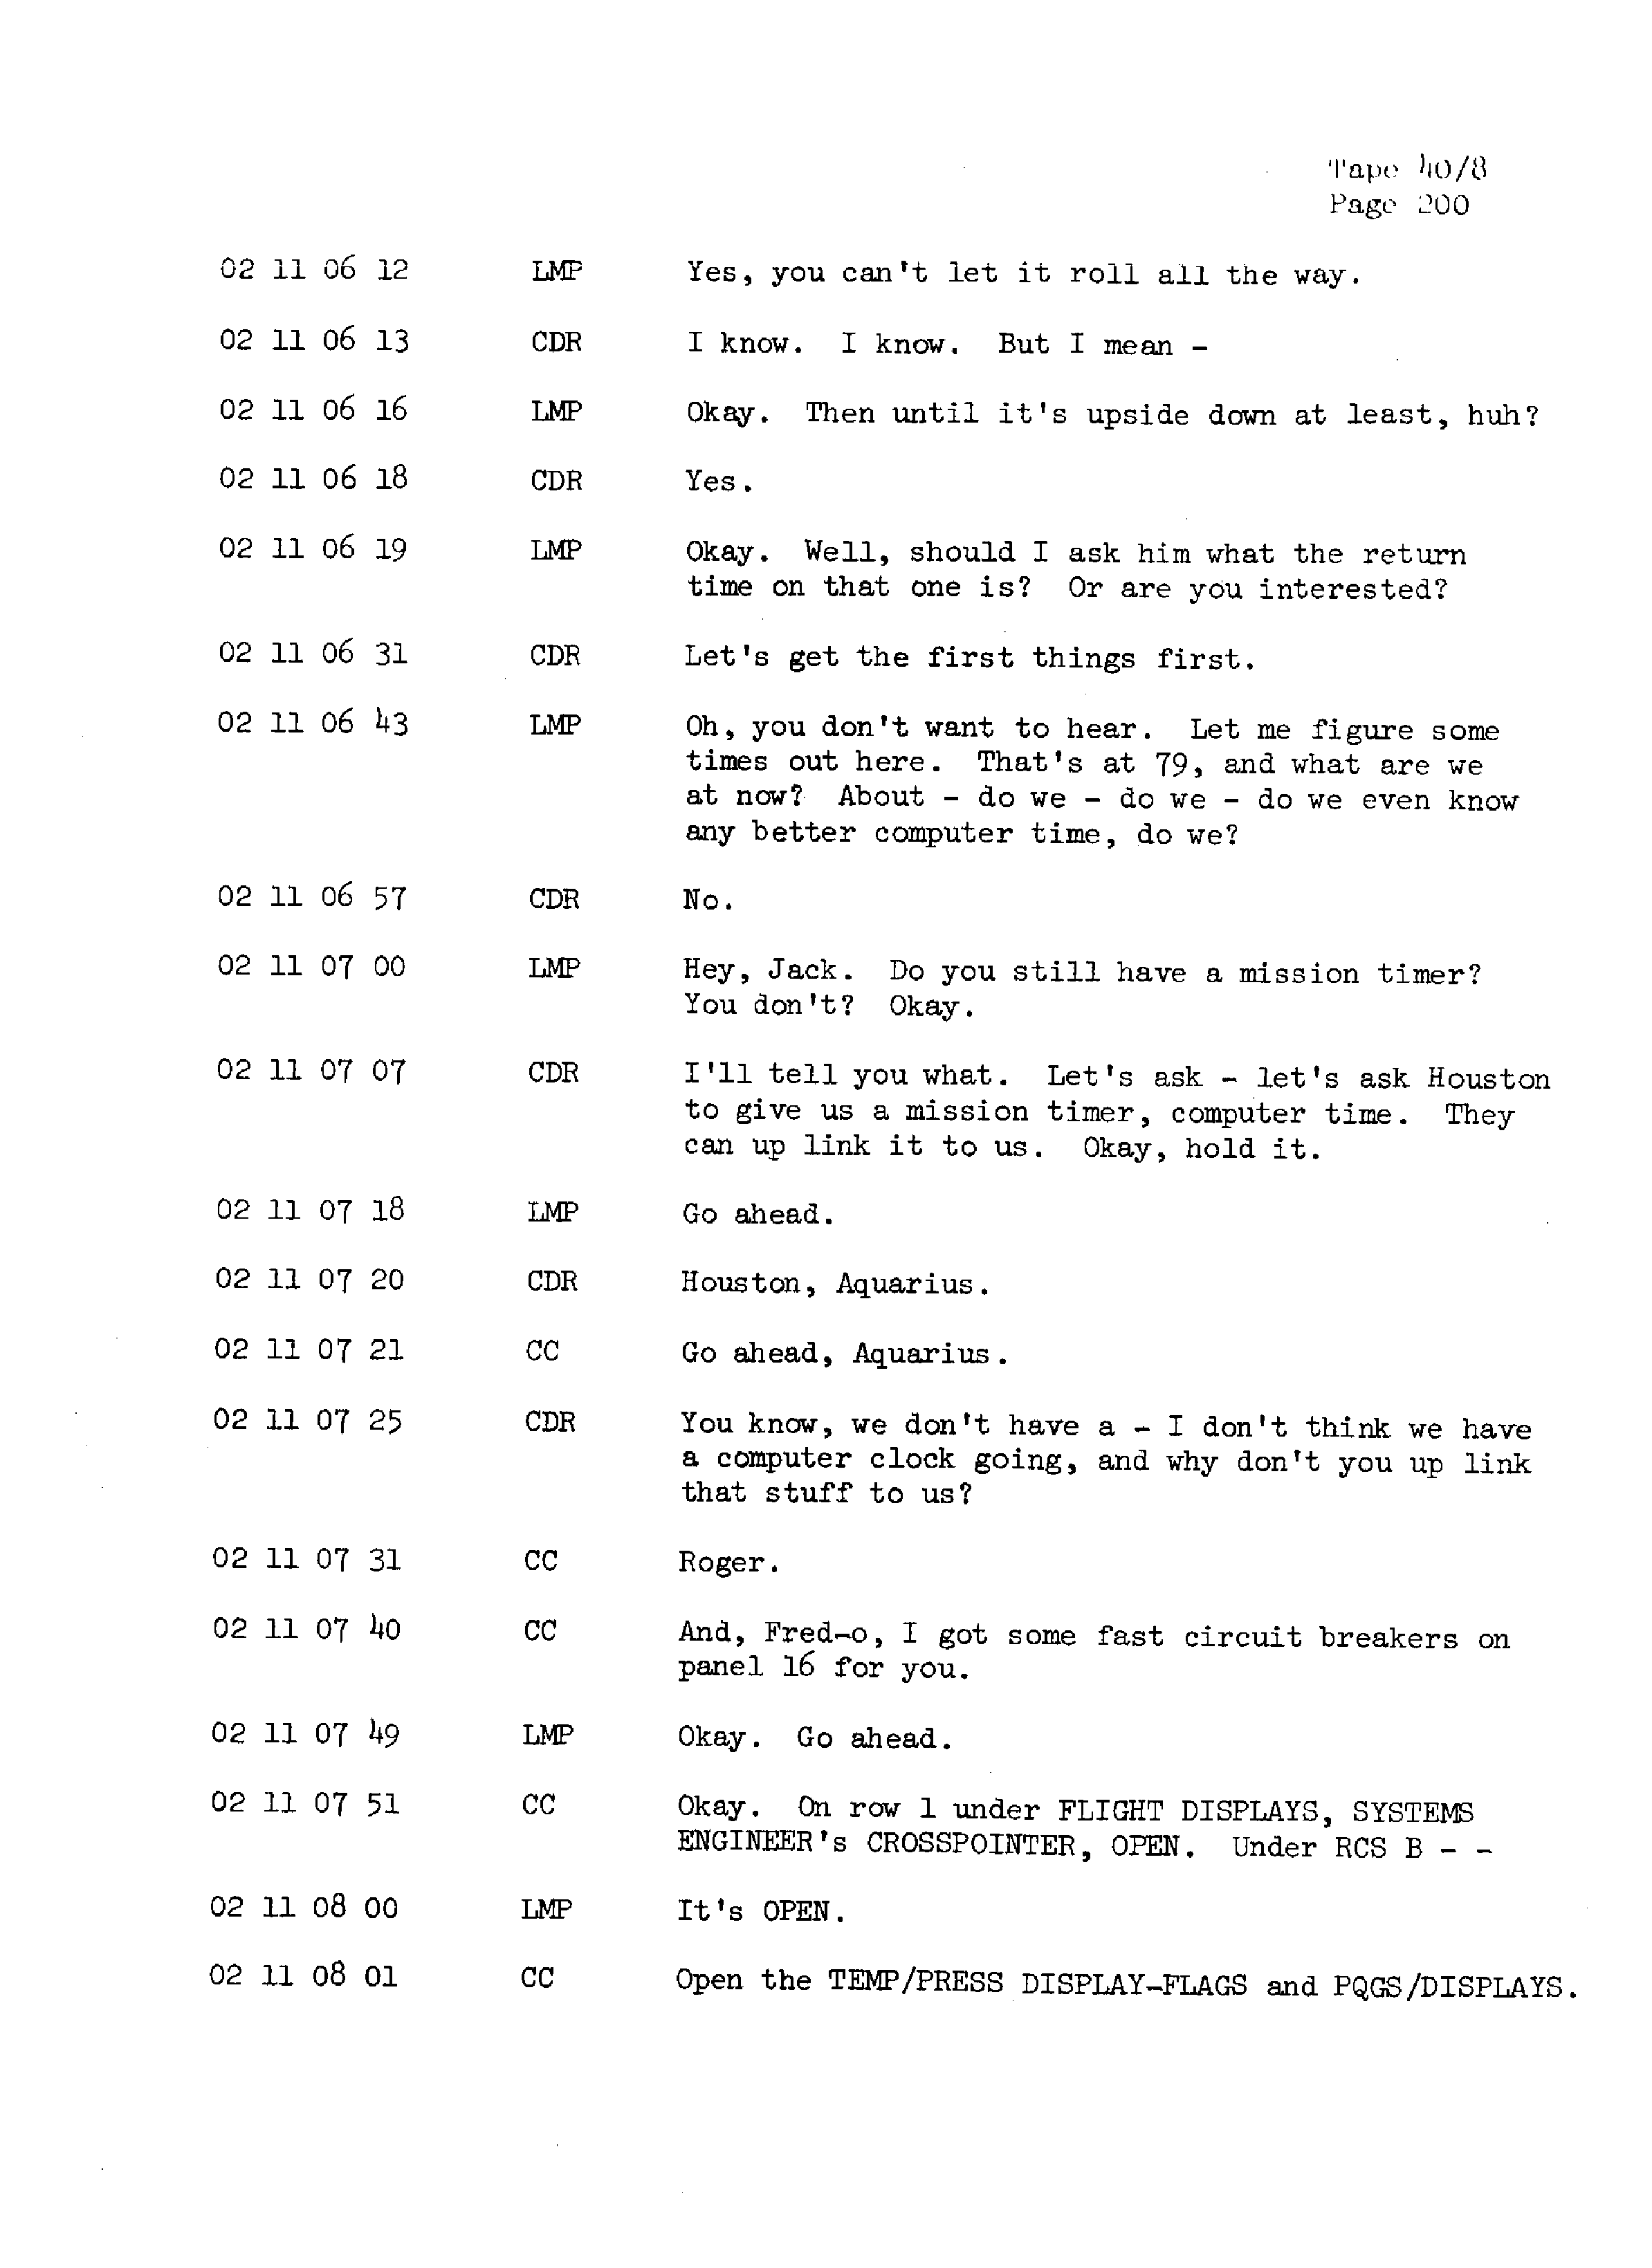 Page 207 of Apollo 13’s original transcript